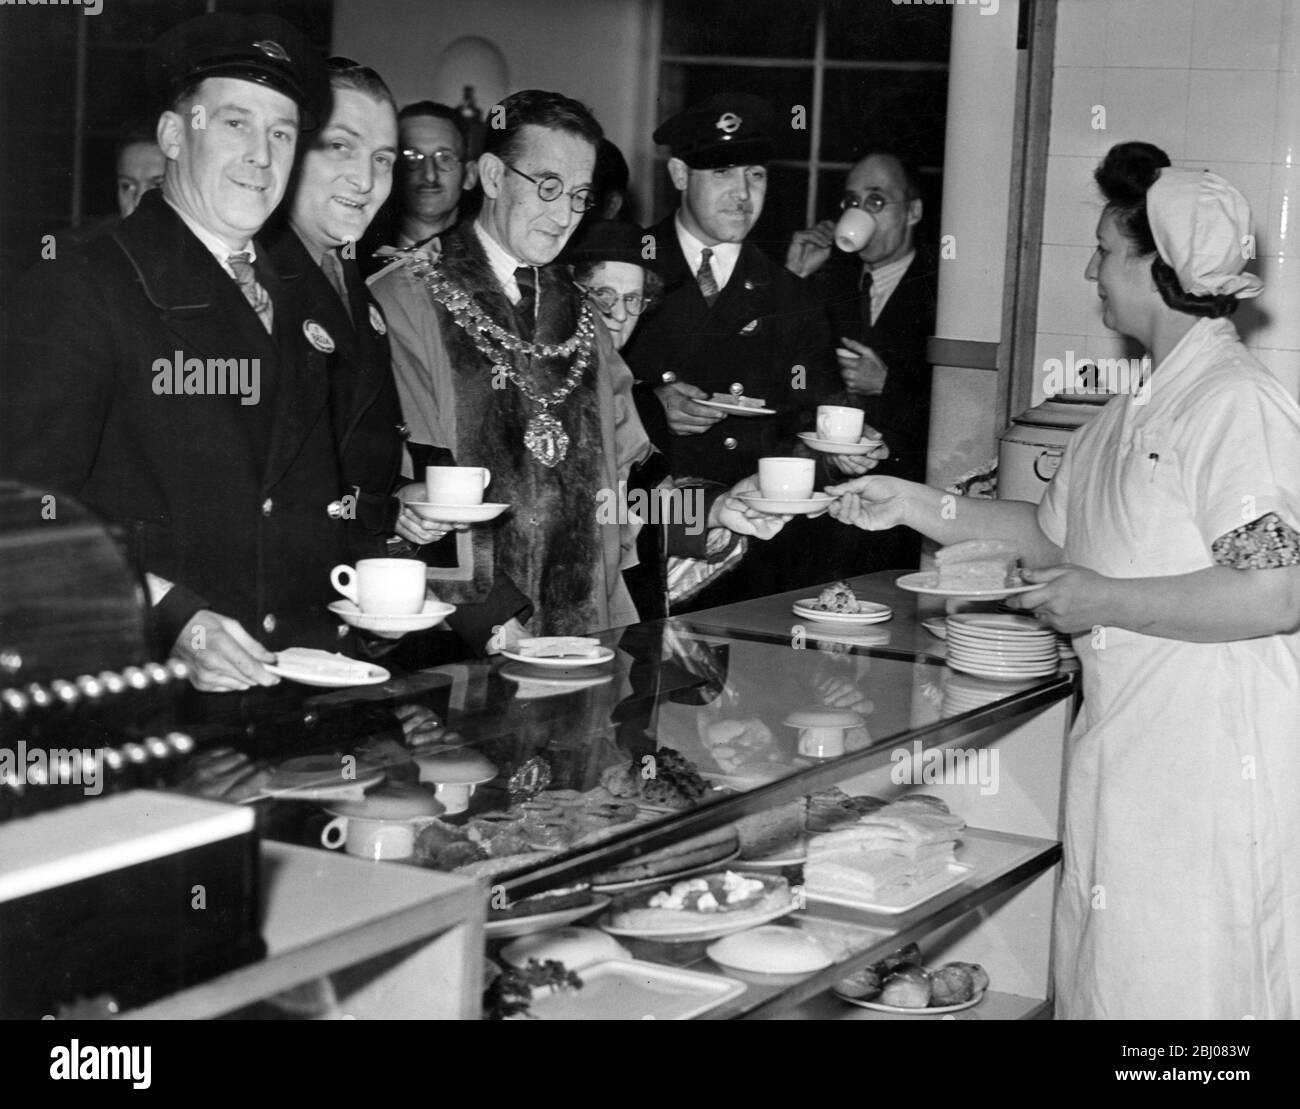 1000 London Transport Männer, die an das West Ham Obus Depot angeschlossen sind, haben eine neue Kantine, die das Gebäude ersetzt, das durch eine fliegende Bombe bombardiert wurde. Alderman F.A. Warner war anwesend, um die erste Tasse Tee zu erhalten. - London, England. - 29. Oktober 1947 Stockfoto